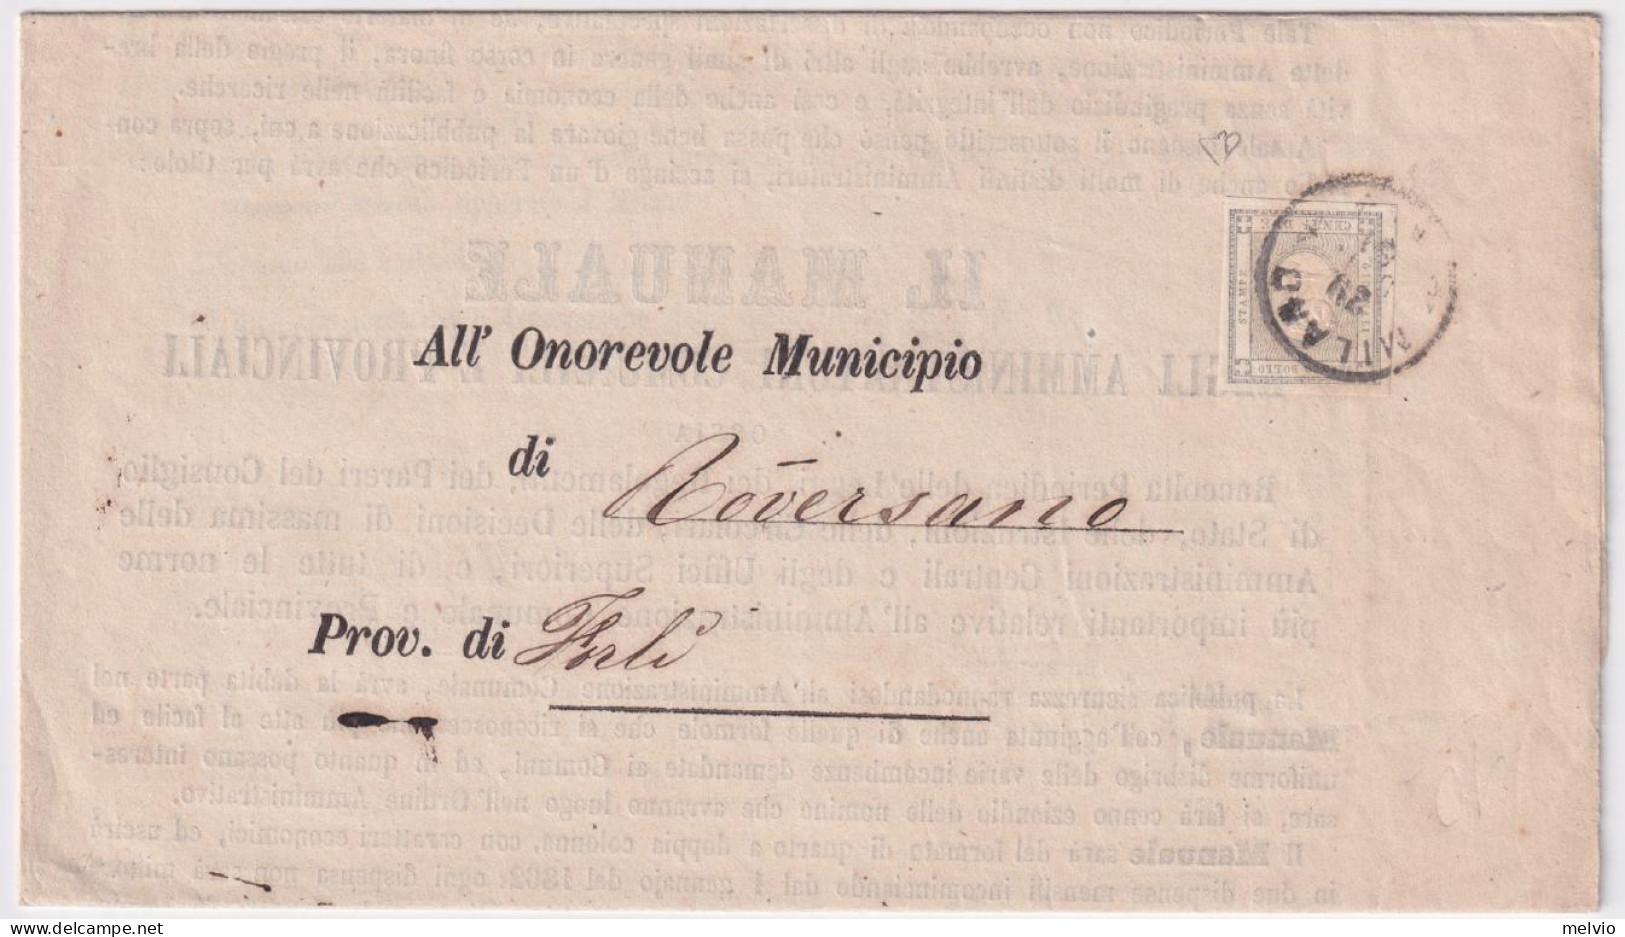 1861-FRANCOBOLLO PER STAMPATI C.2 (20) Isolato Su Stampe Milano (29.12) Firmato  - Marcofilía